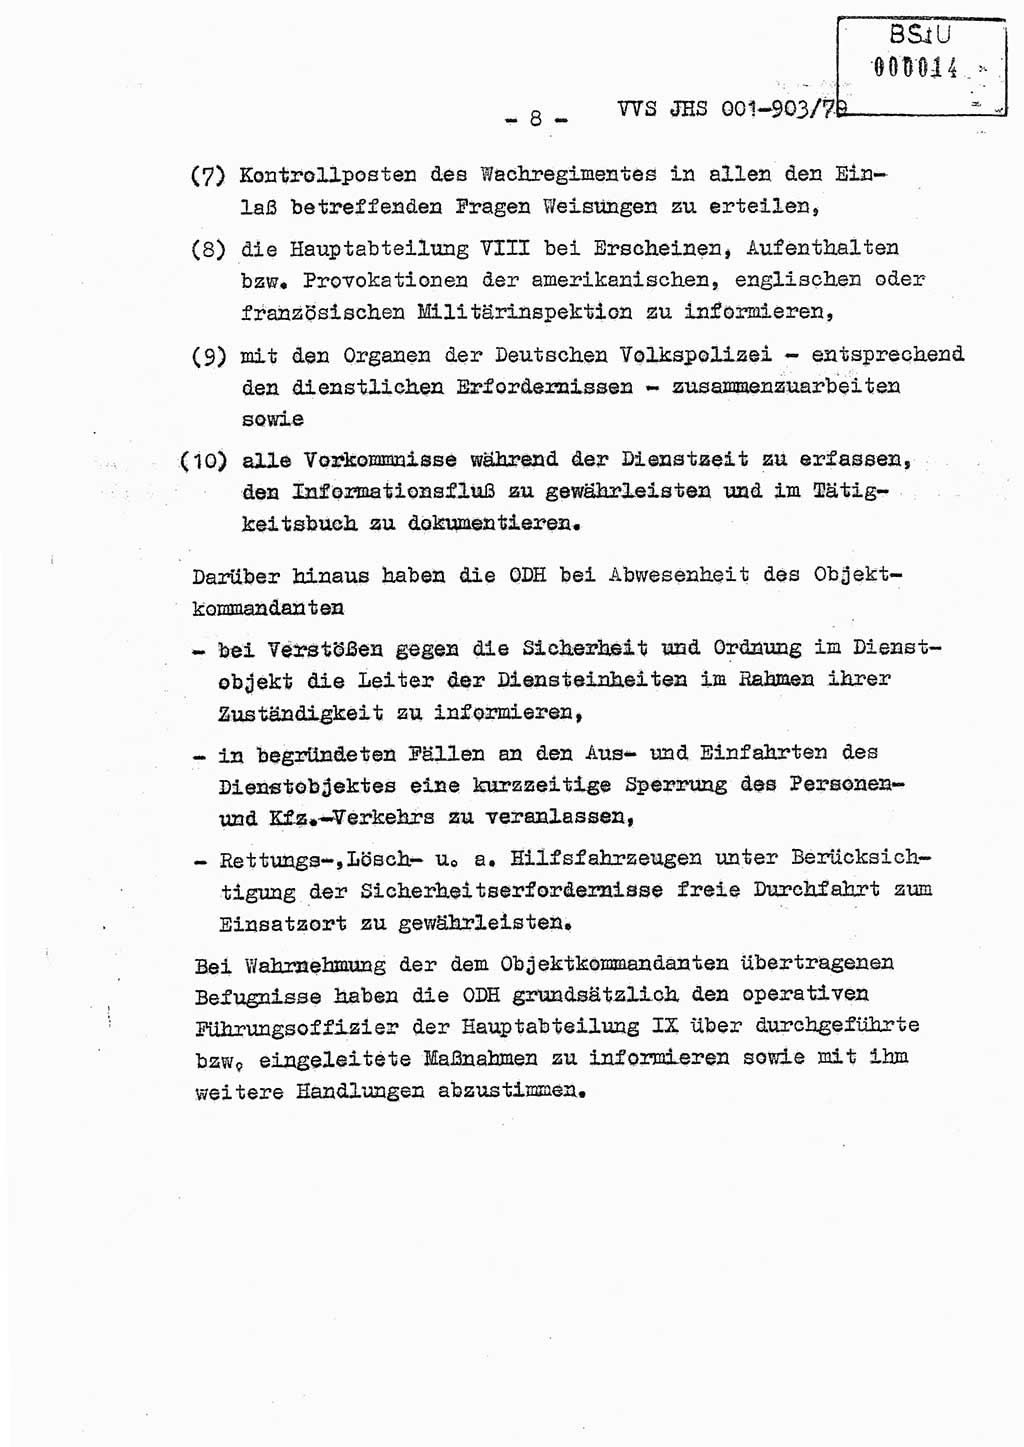 Fachschulabschlußarbeit Oberleutnant Jochen Pfeffer (HA Ⅸ/AGL), Ministerium für Staatssicherheit (MfS) [Deutsche Demokratische Republik (DDR)], Juristische Hochschule (JHS), Vertrauliche Verschlußsache (VVS) 001-903/79, Potsdam 1979, Seite 8 (FS-Abschl.-Arb. MfS DDR JHS VVS 001-903/79 1979, S. 8)